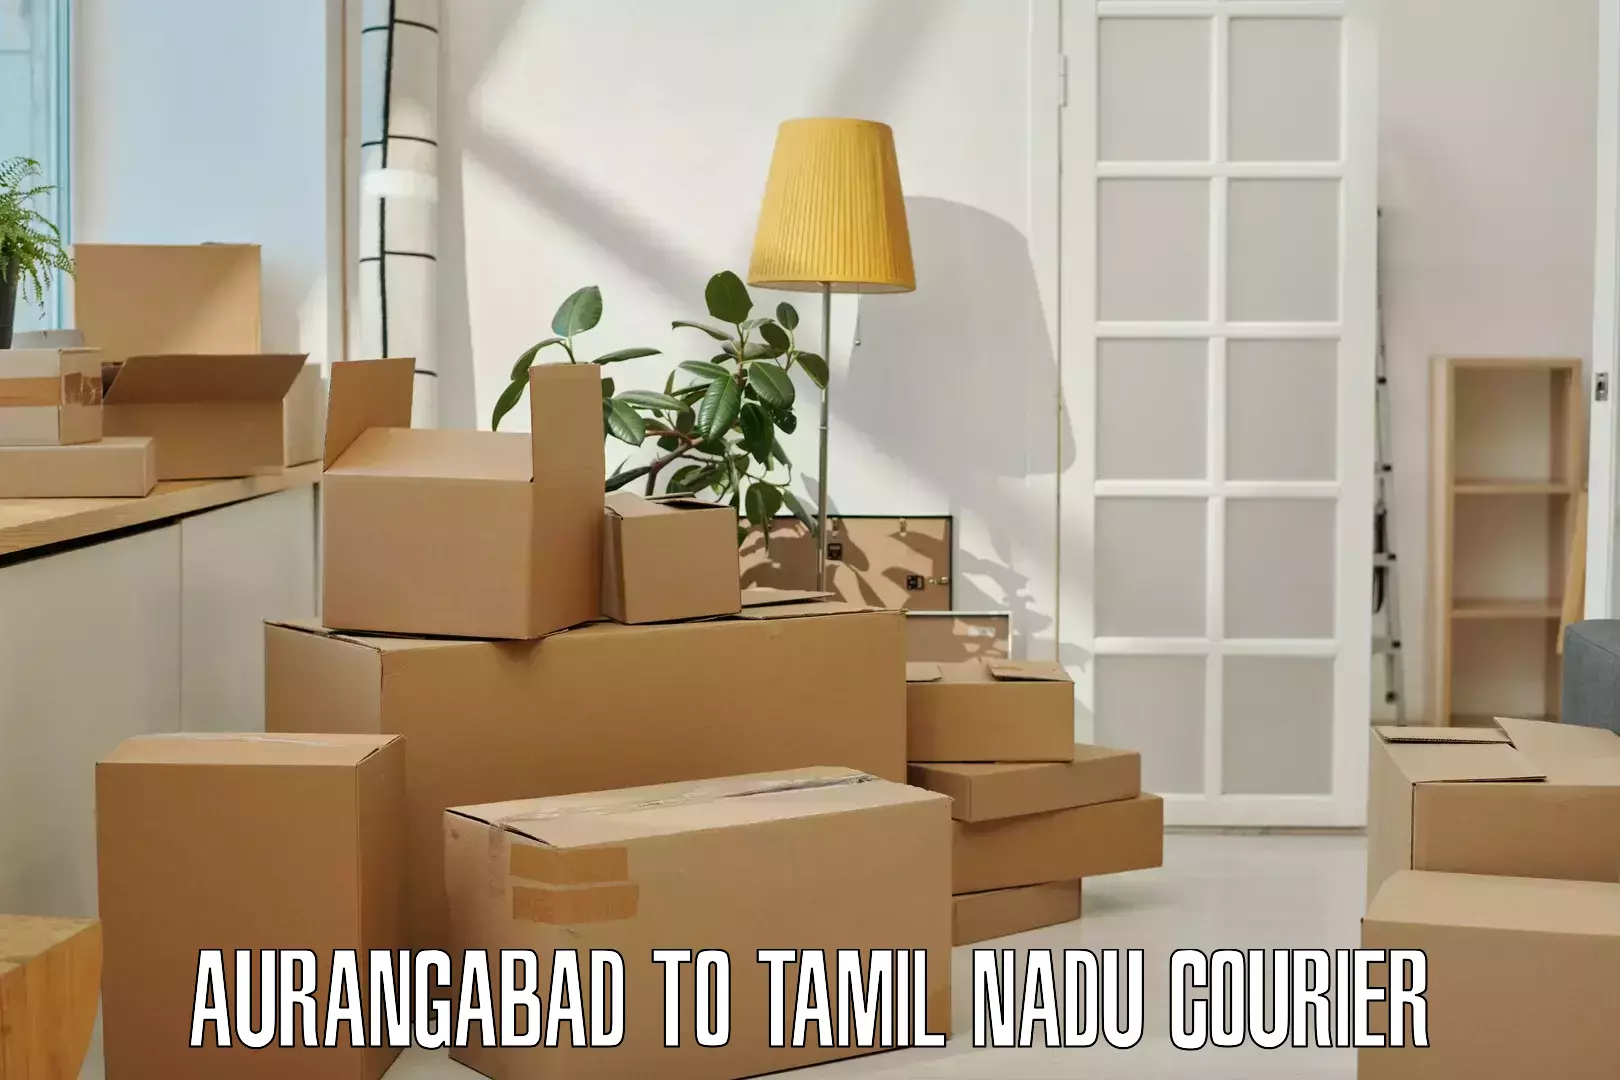 Urban courier service Aurangabad to Tamil Nadu